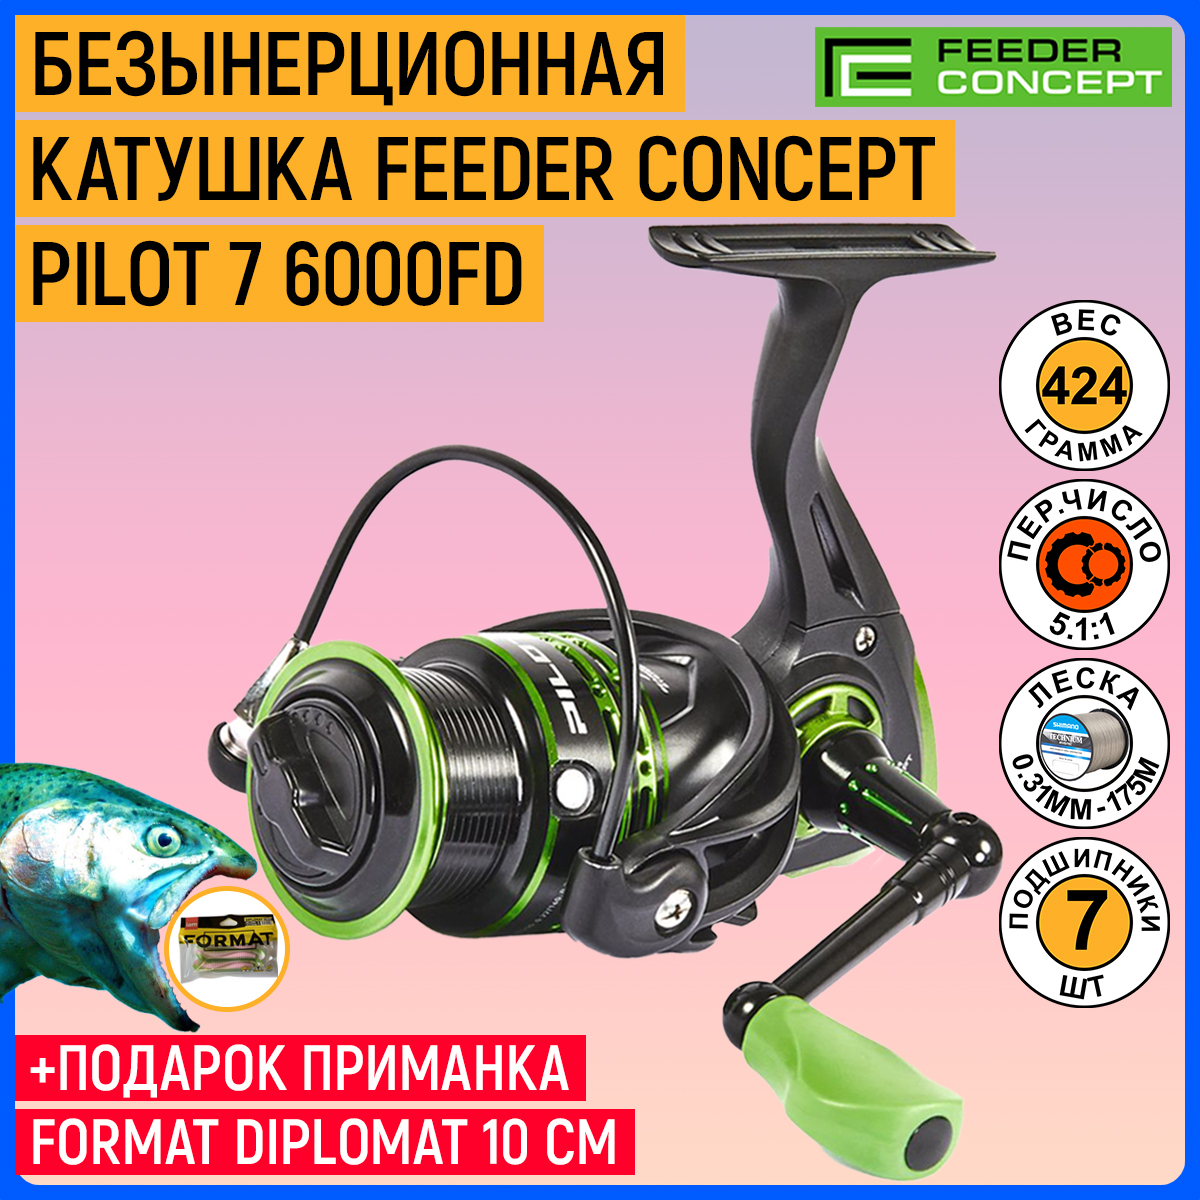 Отзывы на Feeder concept pilot 7 4000fd